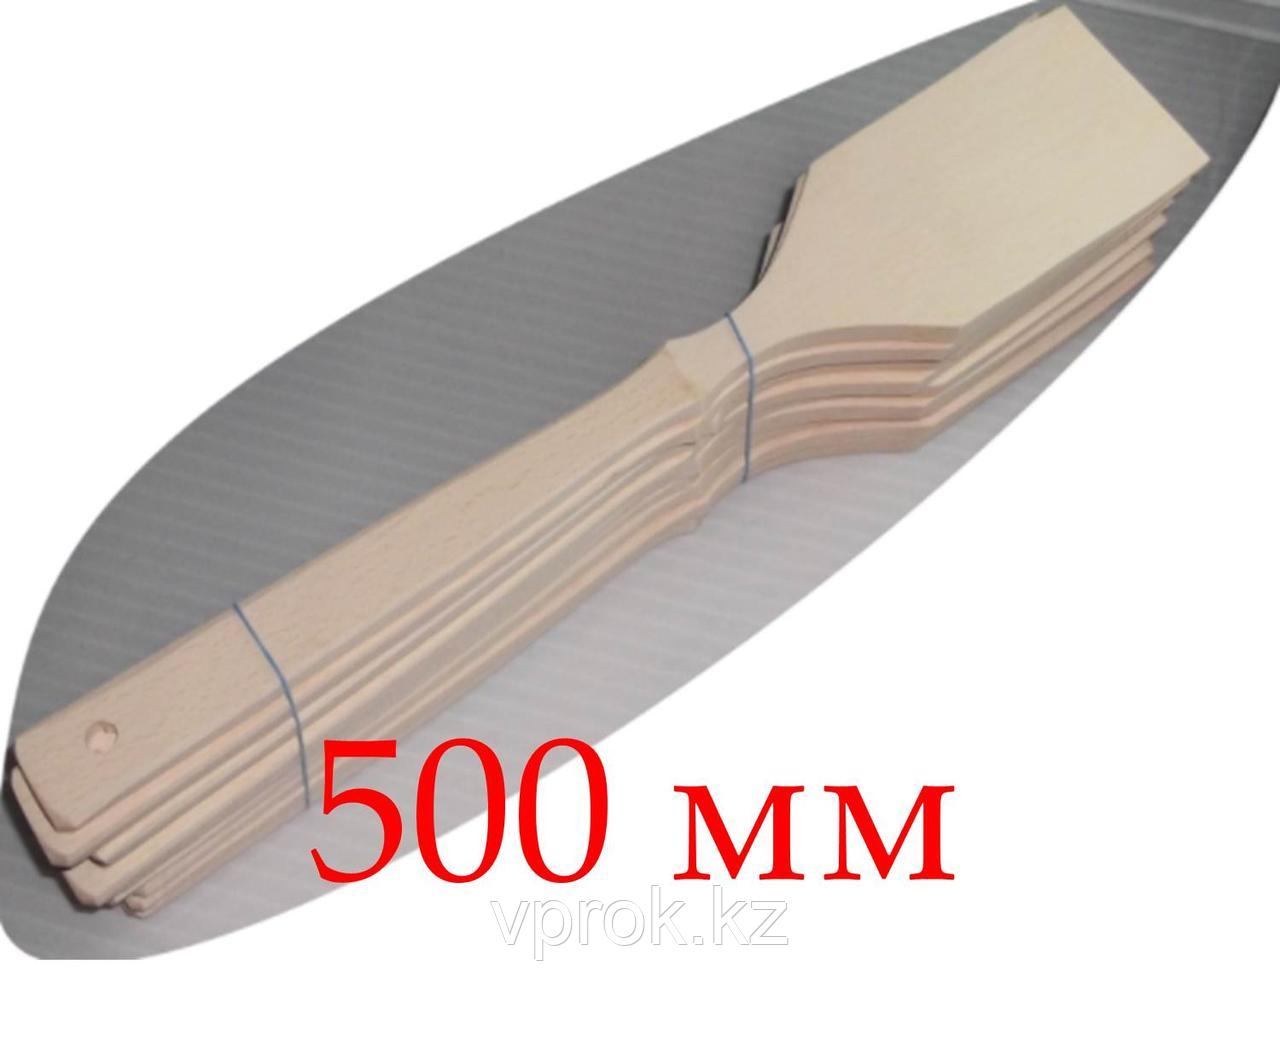 Кухонная лопатка, деревянная, 500 мм